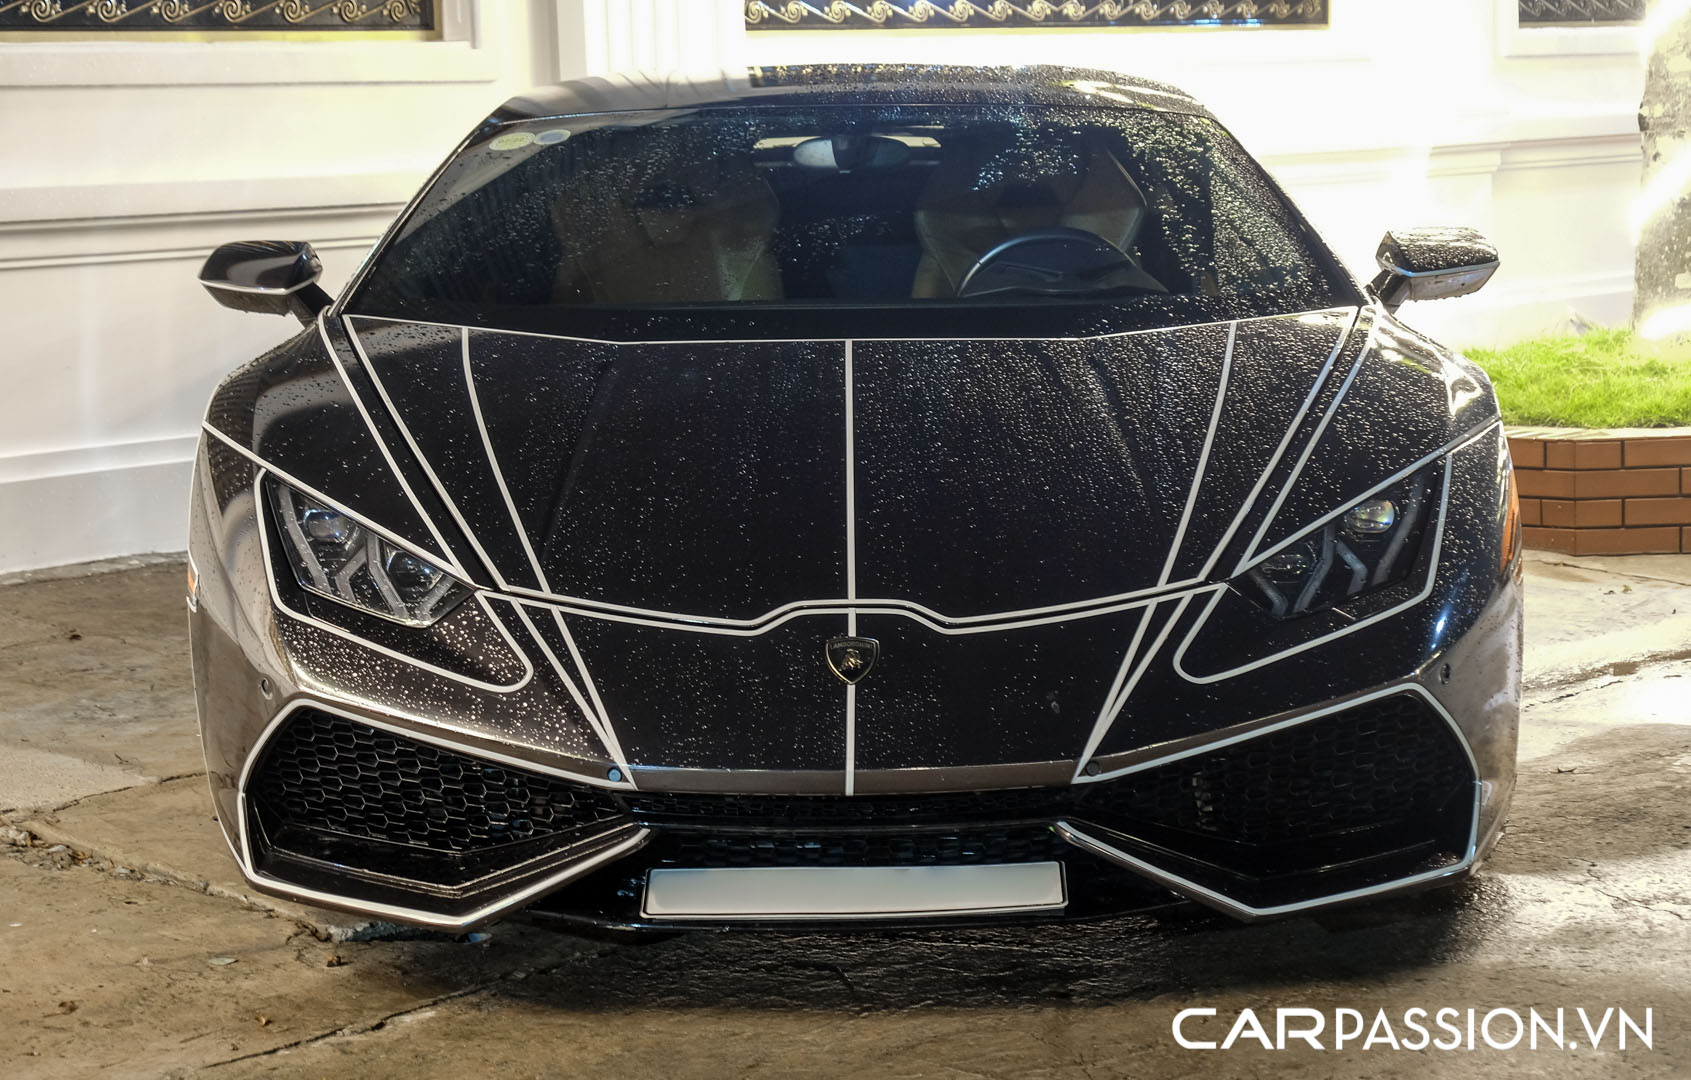 CP-Bộ đôi Lamborghini Huracan độ độc đáo47.jpg